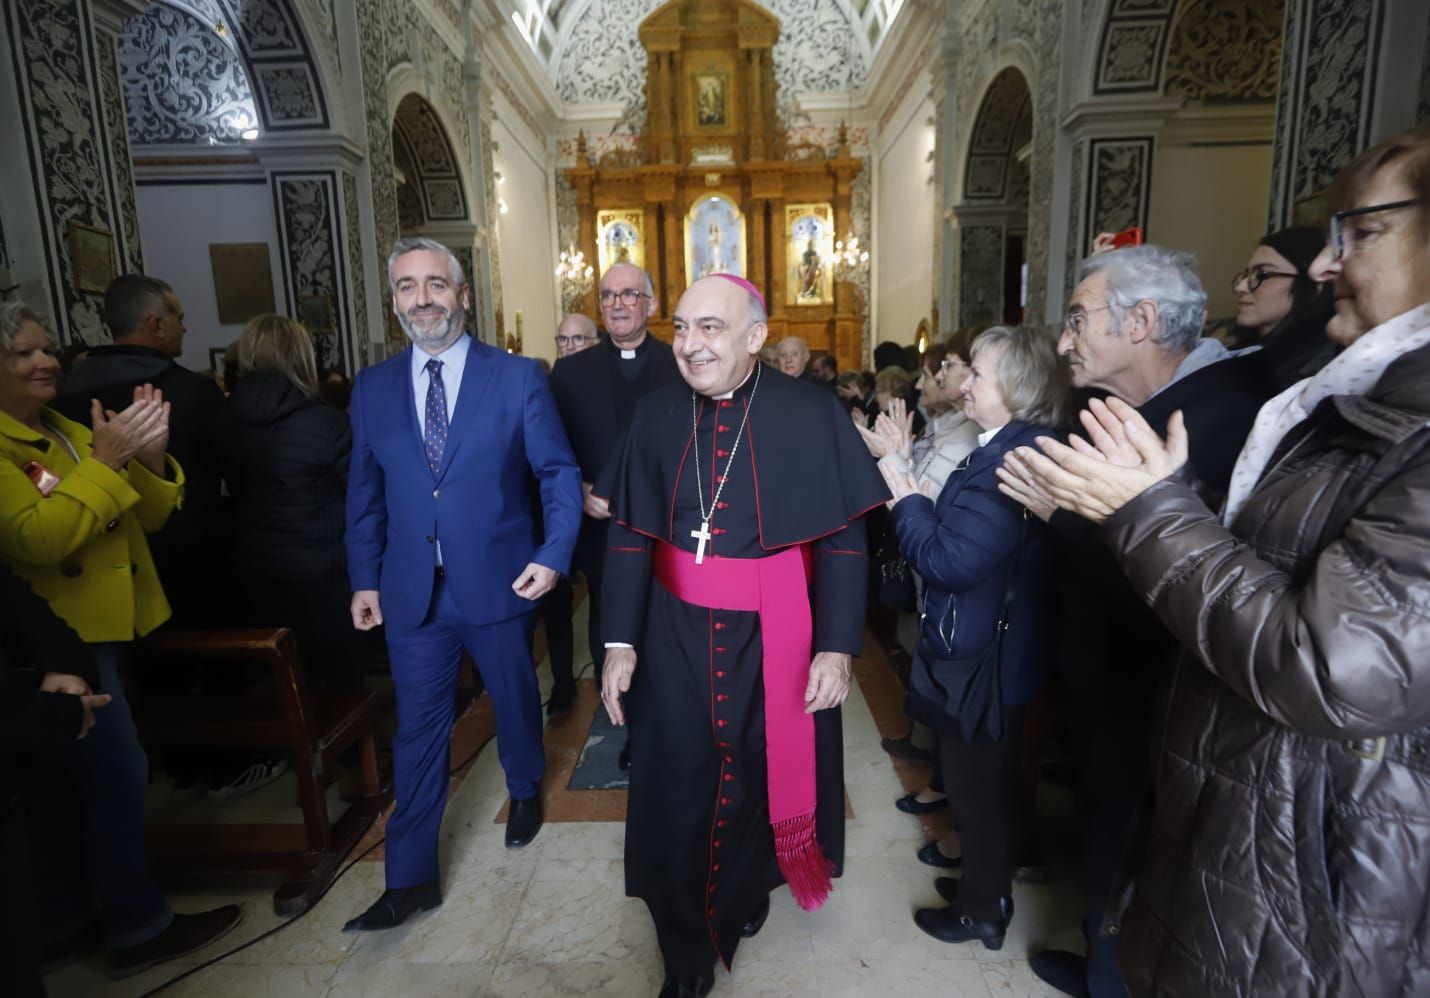 Las primeras imágenes de la entrada del nuevo Arzobispo de València a la diocésis